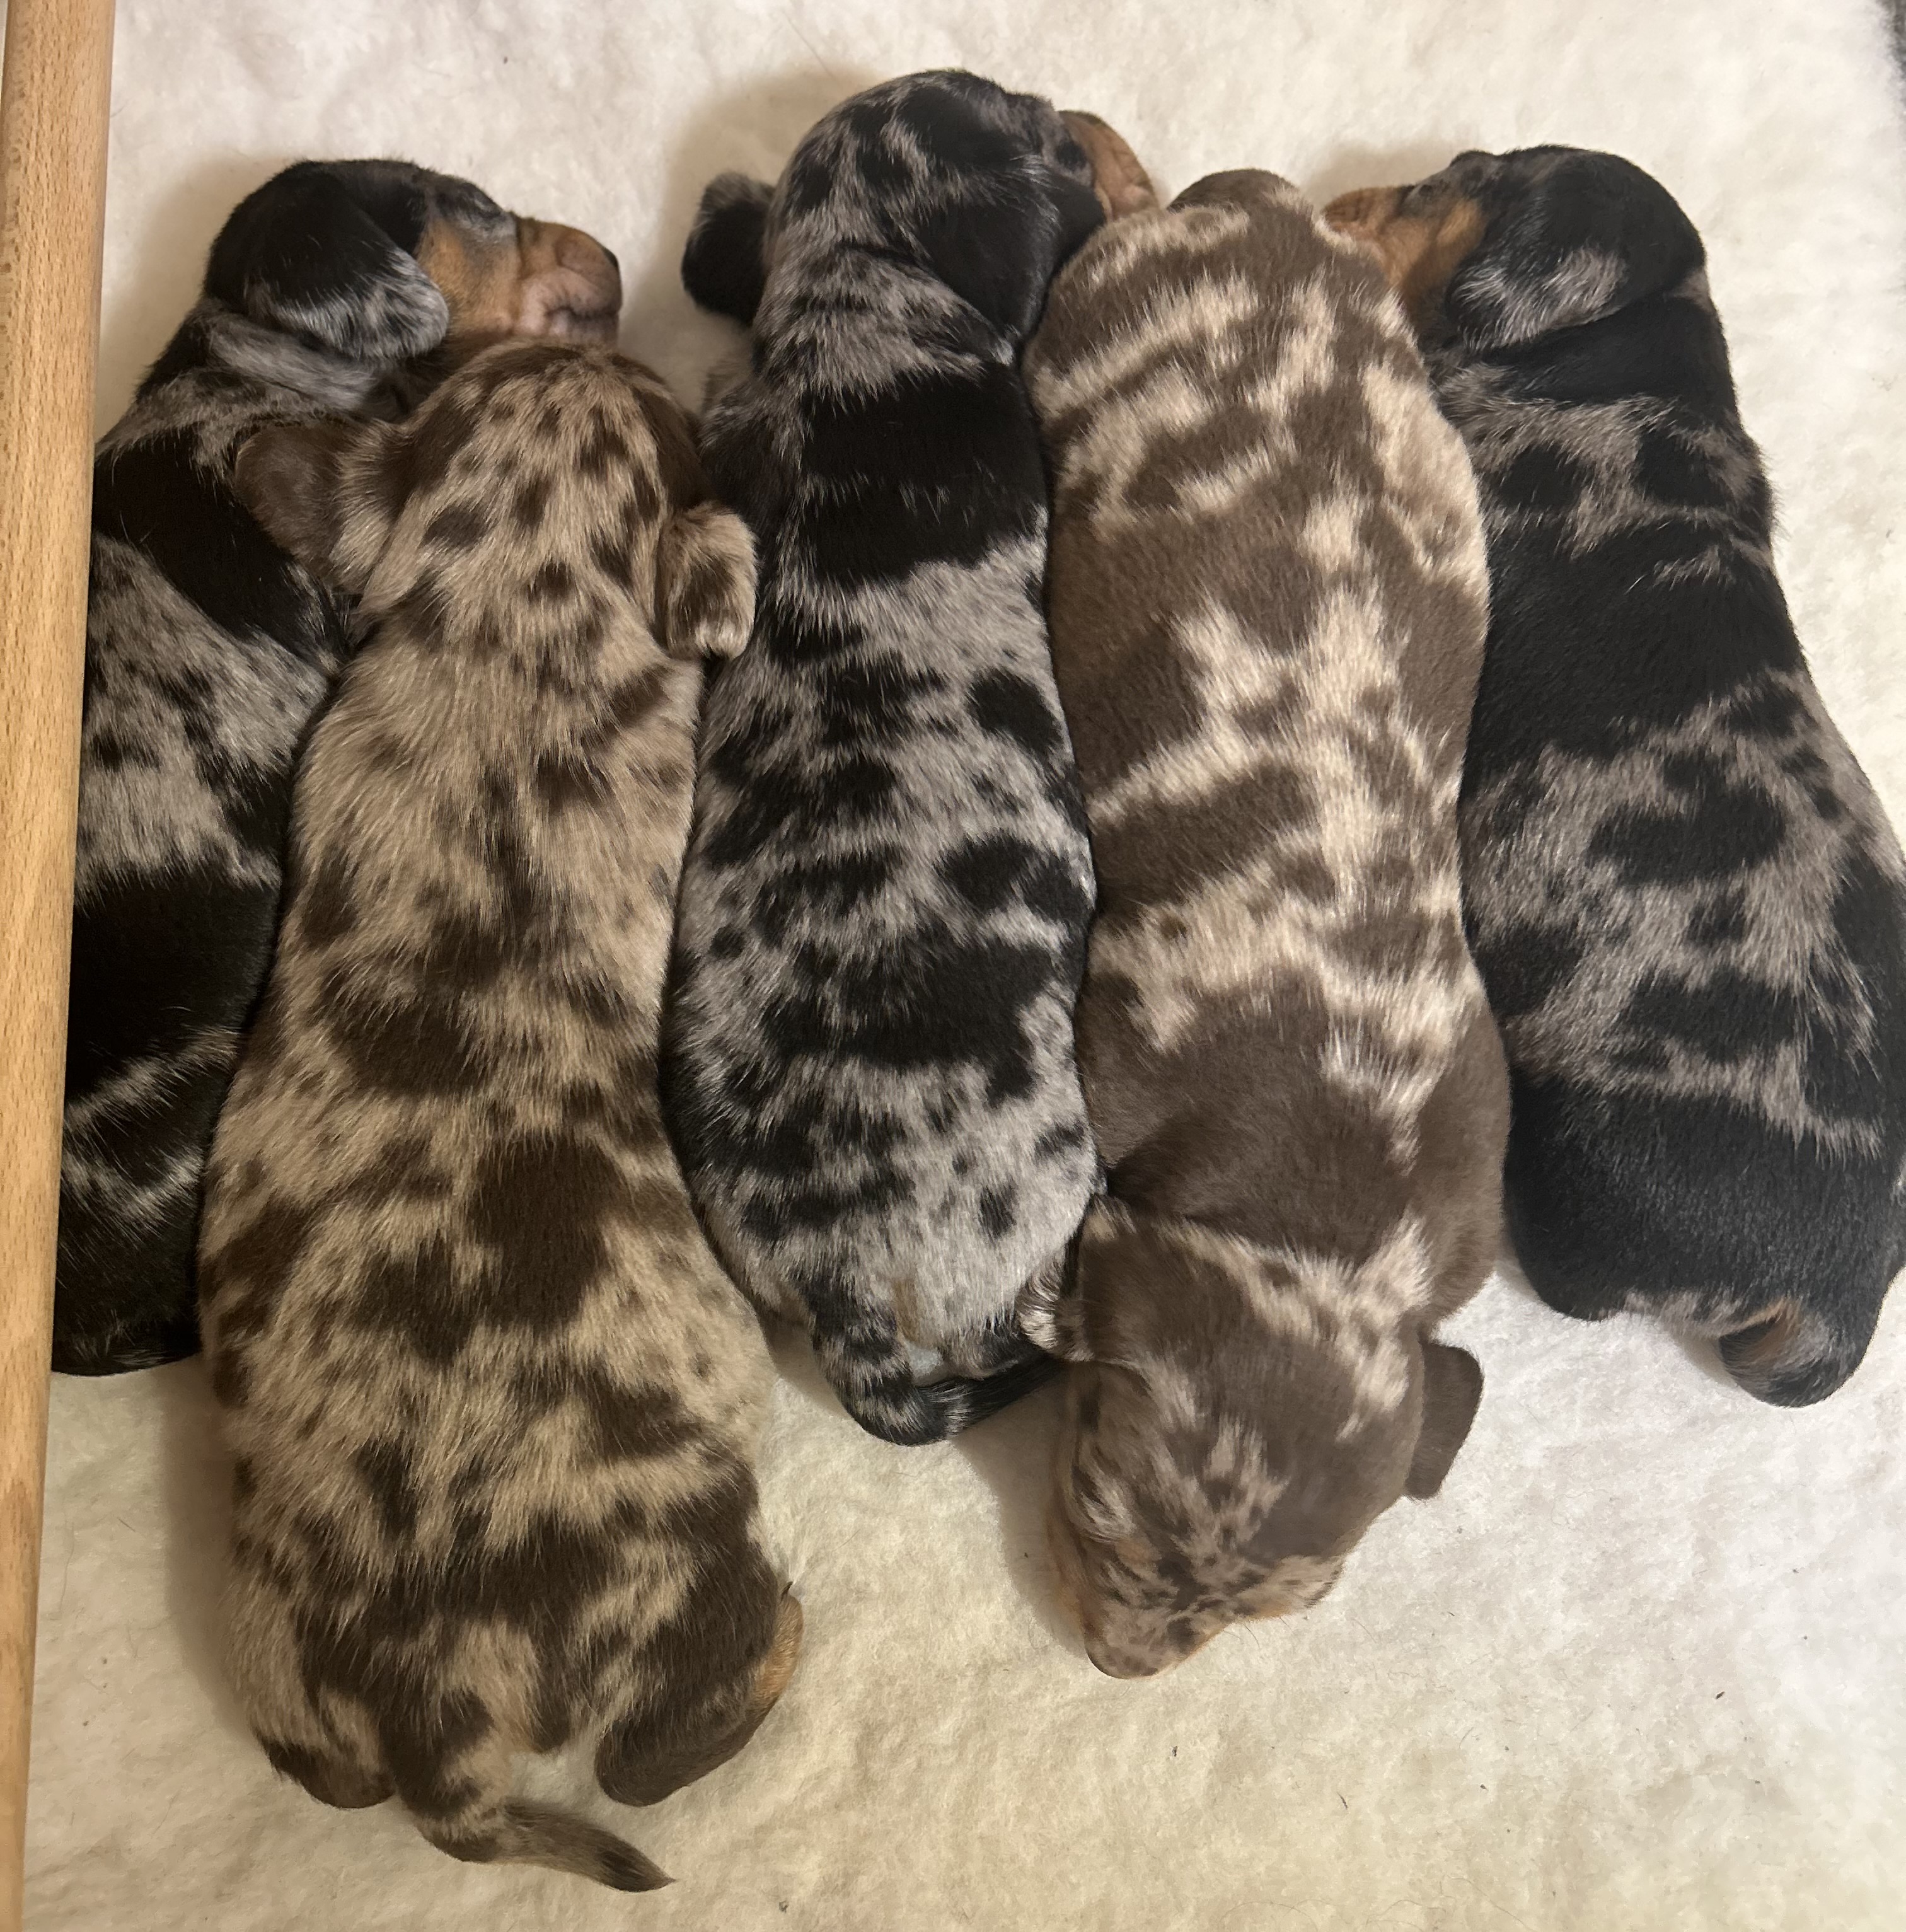 Pebble's litter of 5 dachshunds 